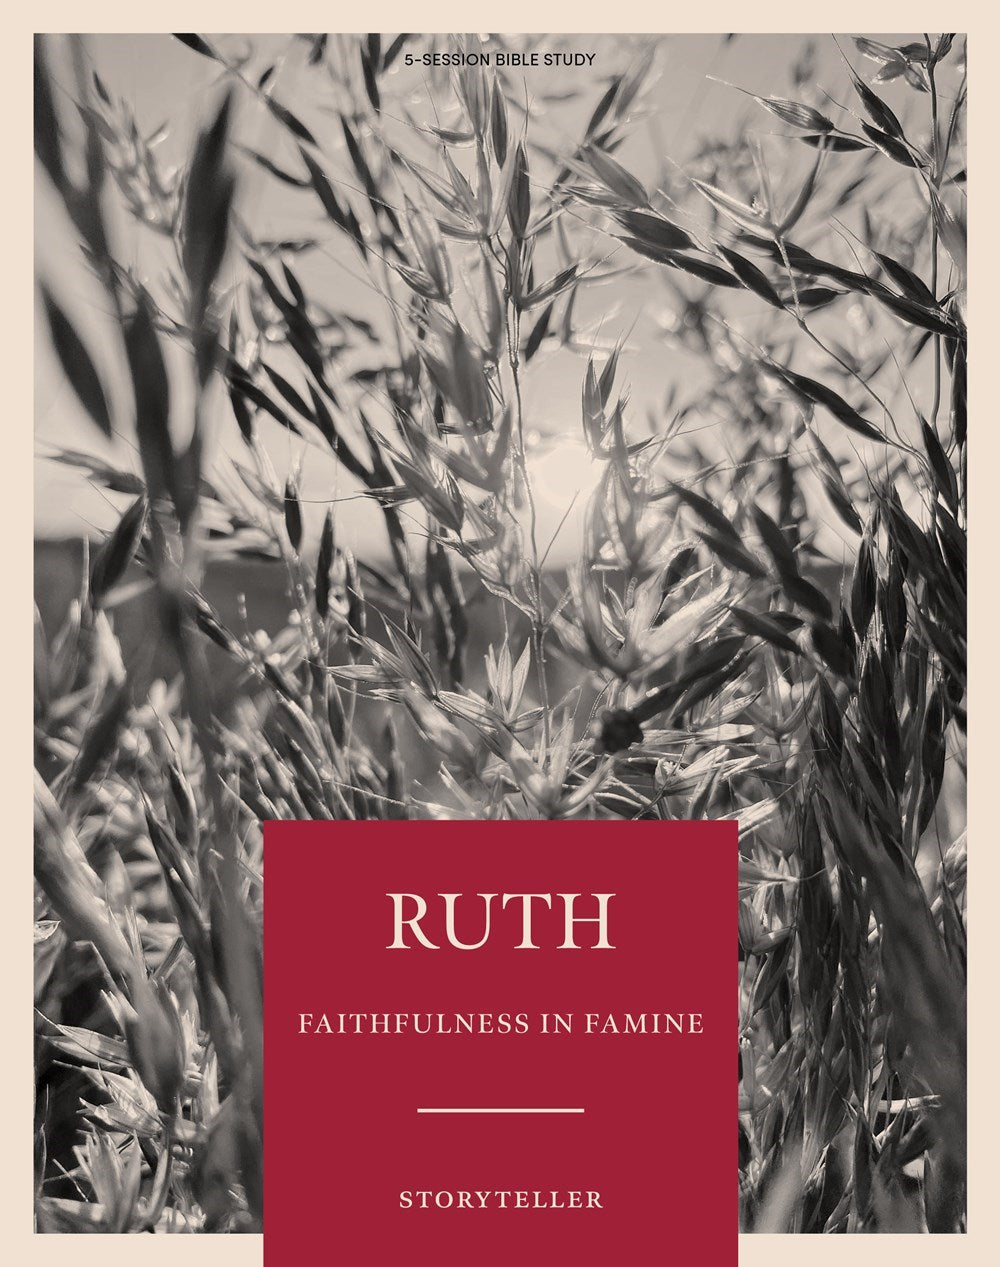 Storyteller: Ruth Bible Study Book